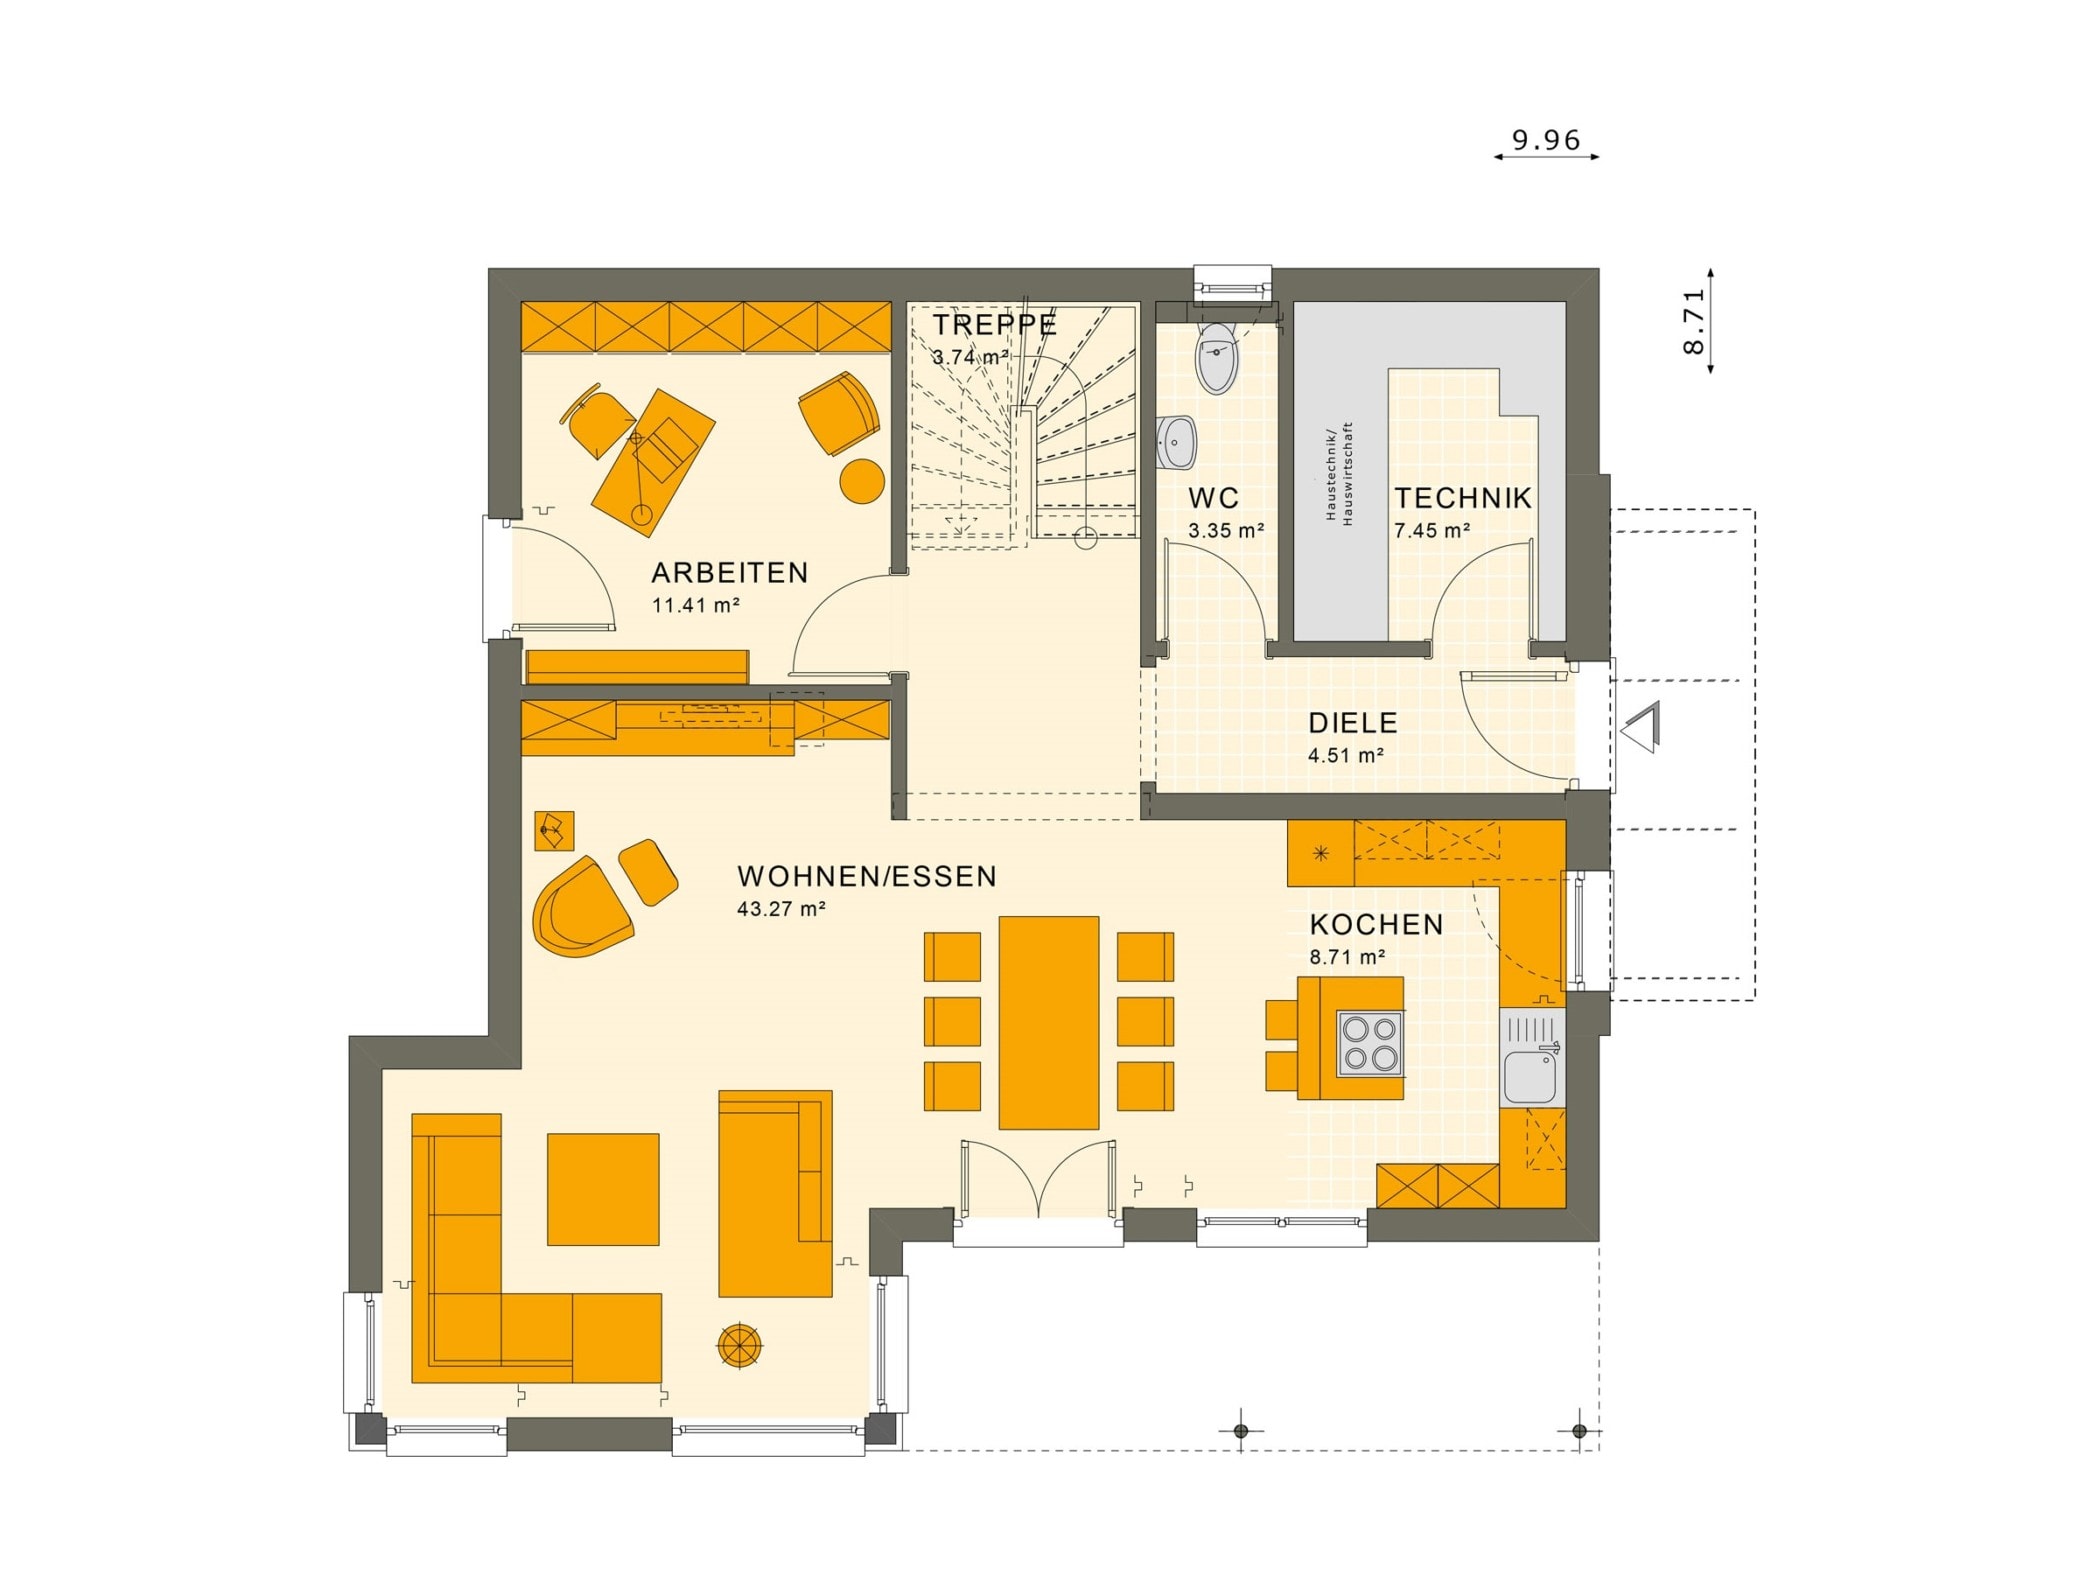 Grundriss Stadtvilla Erdgeschoss mit Erker, 5 Zimmer, 145 qm - Fertighaus bauen Ideen Living Haus SUNSHINE 143 V6 - HausbauDirekt.de